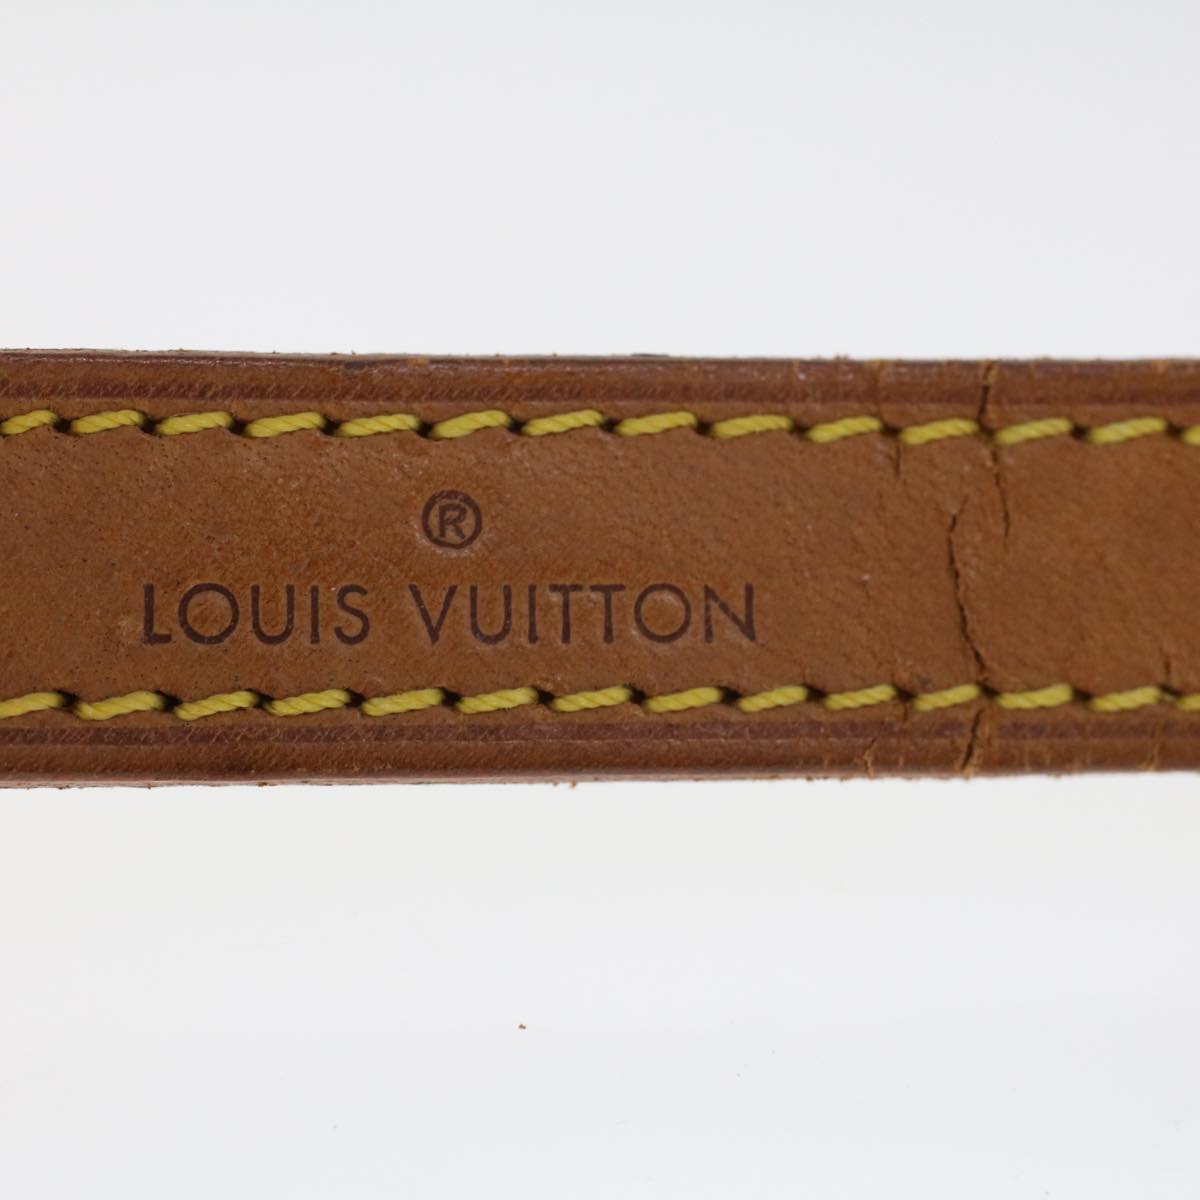 LOUIS VUITTON Shoulder Strap Leather 35.4"" Beige LV Auth 44919